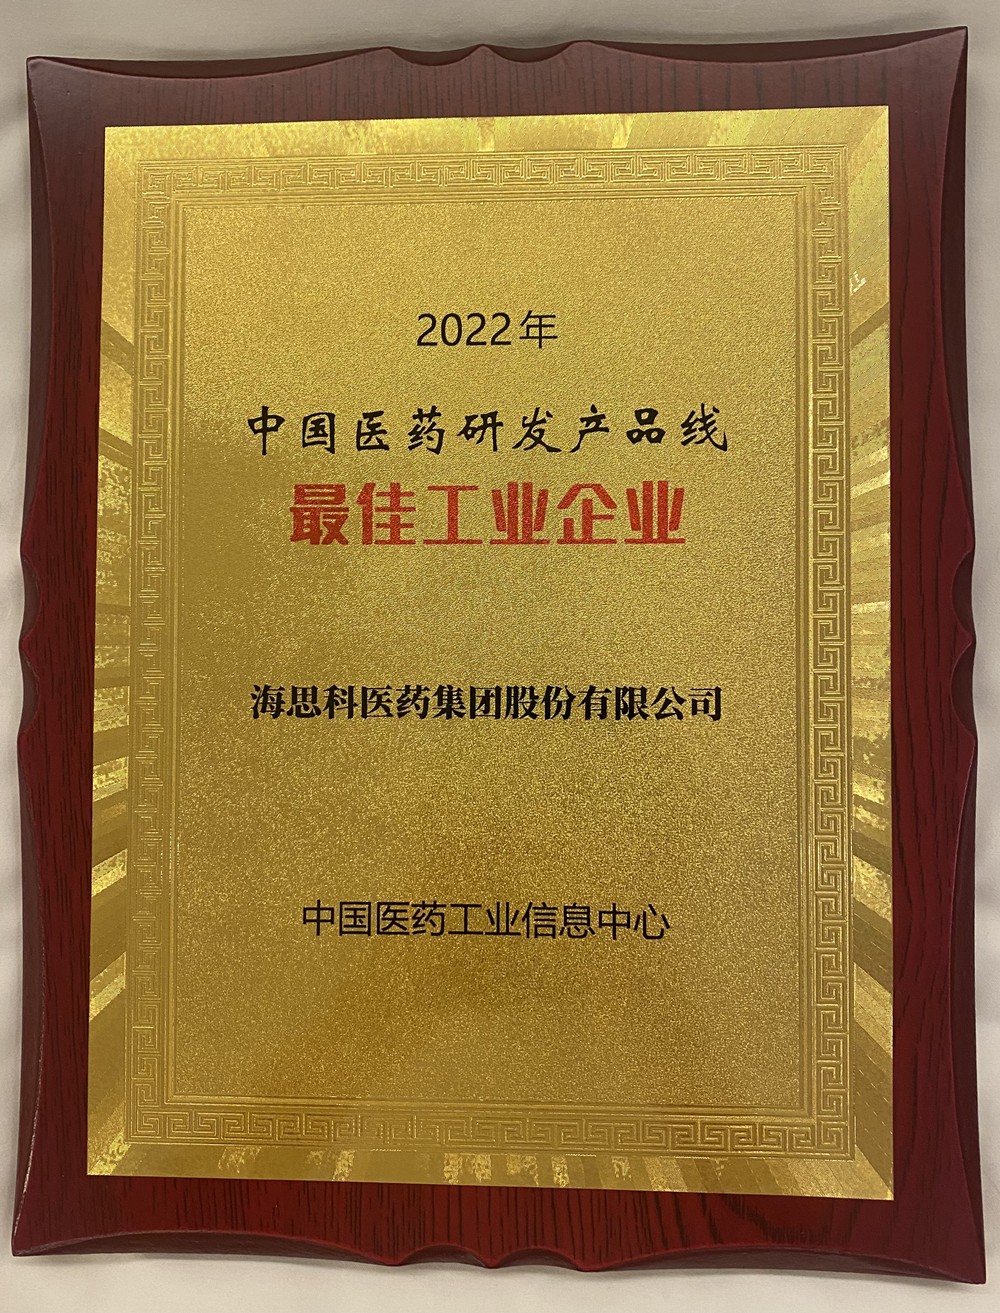 海思科荣获中国医药研发产品线最佳工业企业